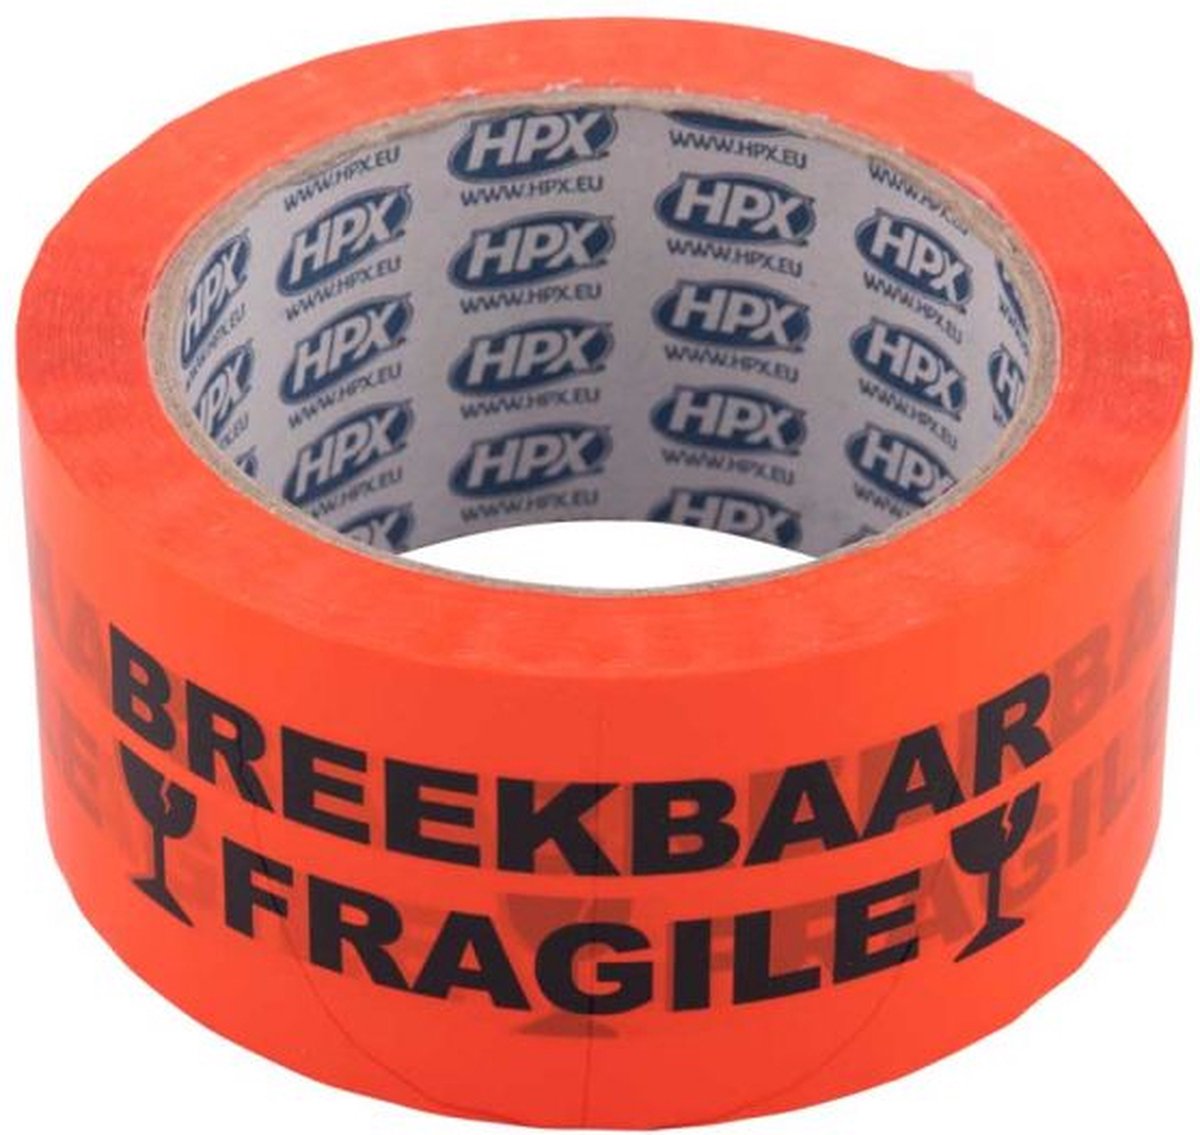 Verpakkingstape - Breekbaar Fragile 50mm x 66m - HPX